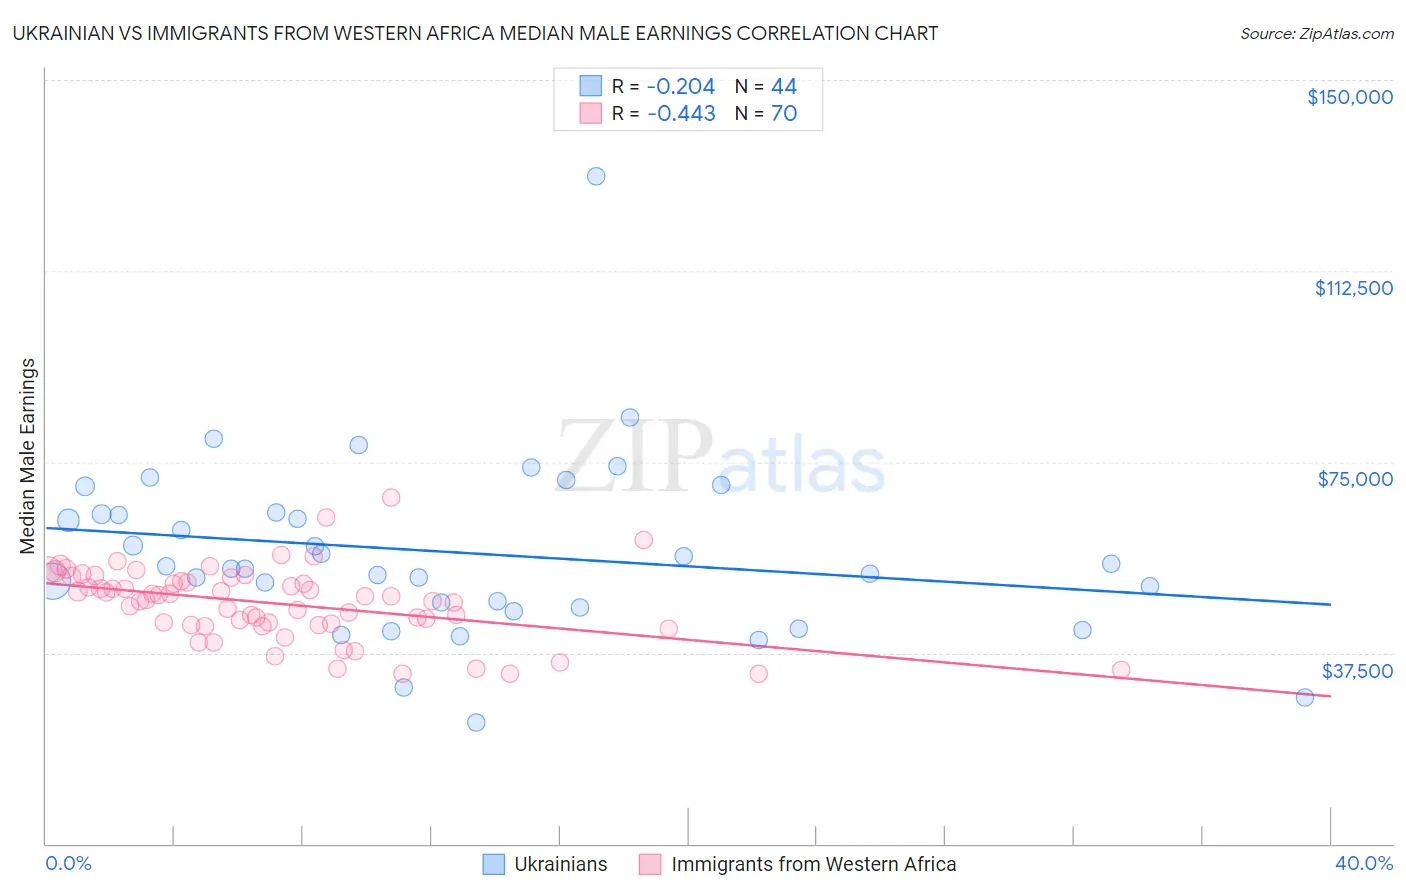 Ukrainian vs Immigrants from Western Africa Median Male Earnings